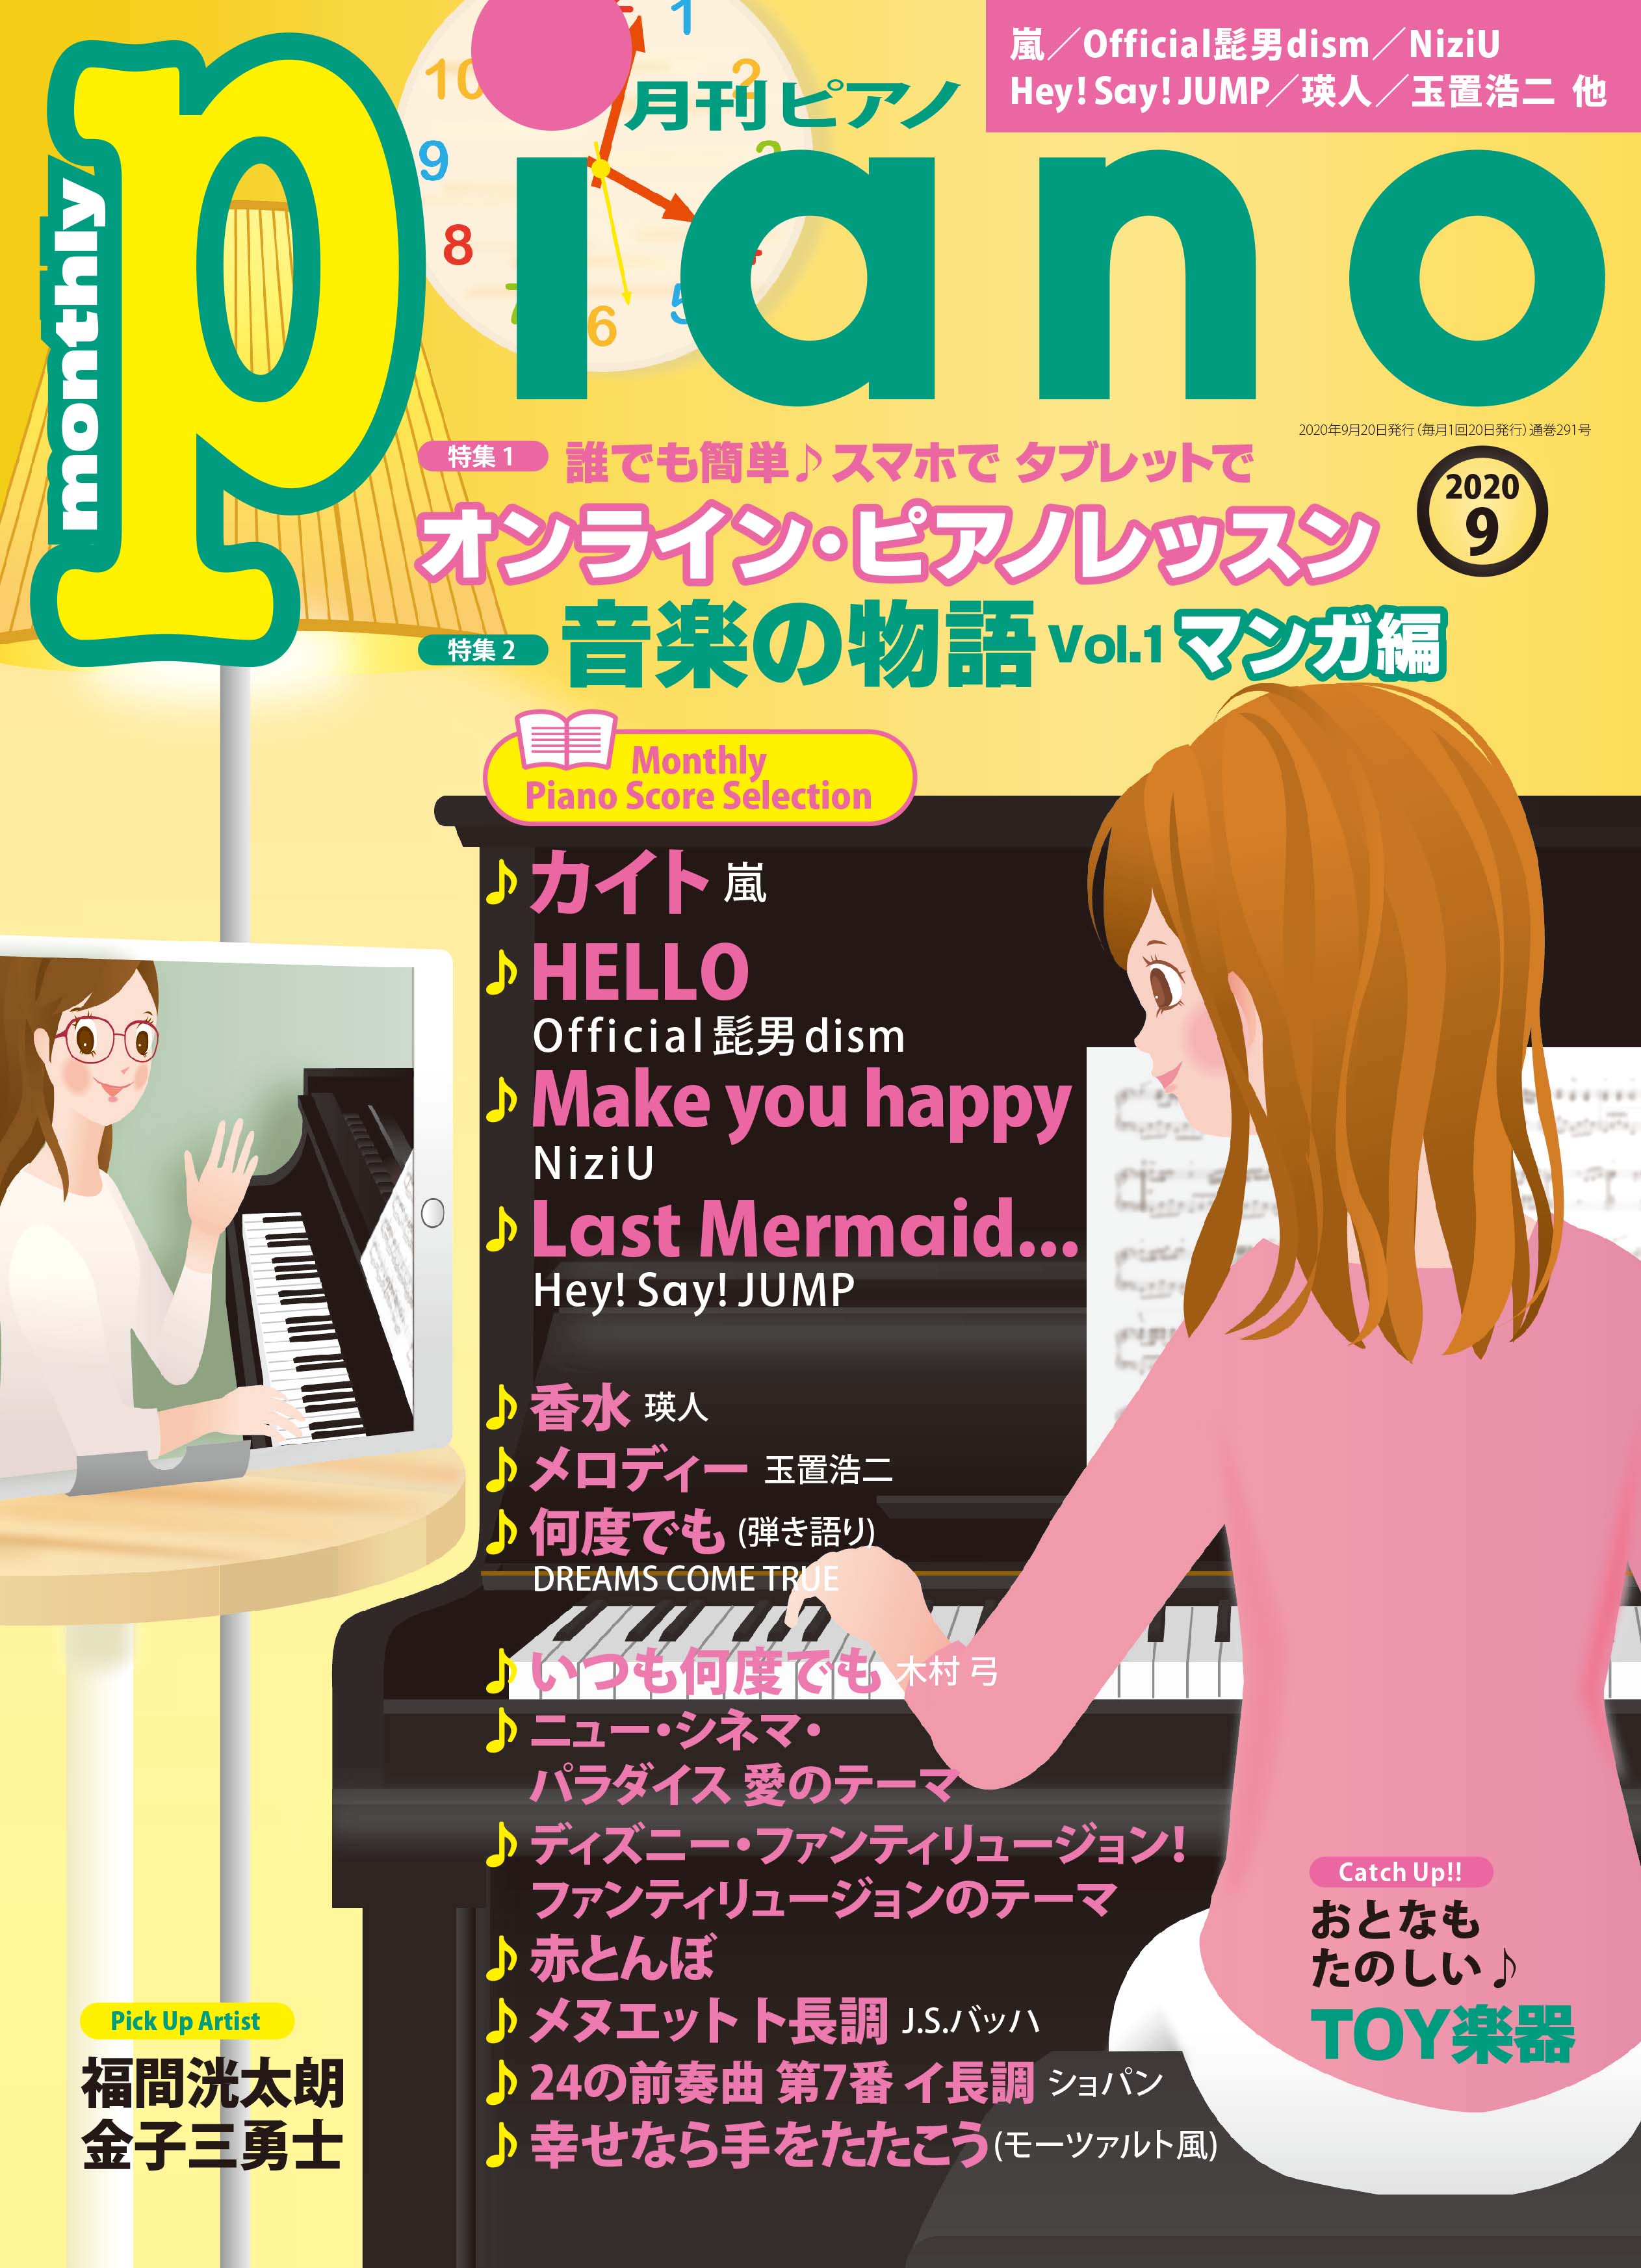 今月の特集は「オンライン・ピアノレッスン」&「音楽の物語 vol.1マンガ編」 『月刊ピアノ2020年9月号』 2020年8月20日発売